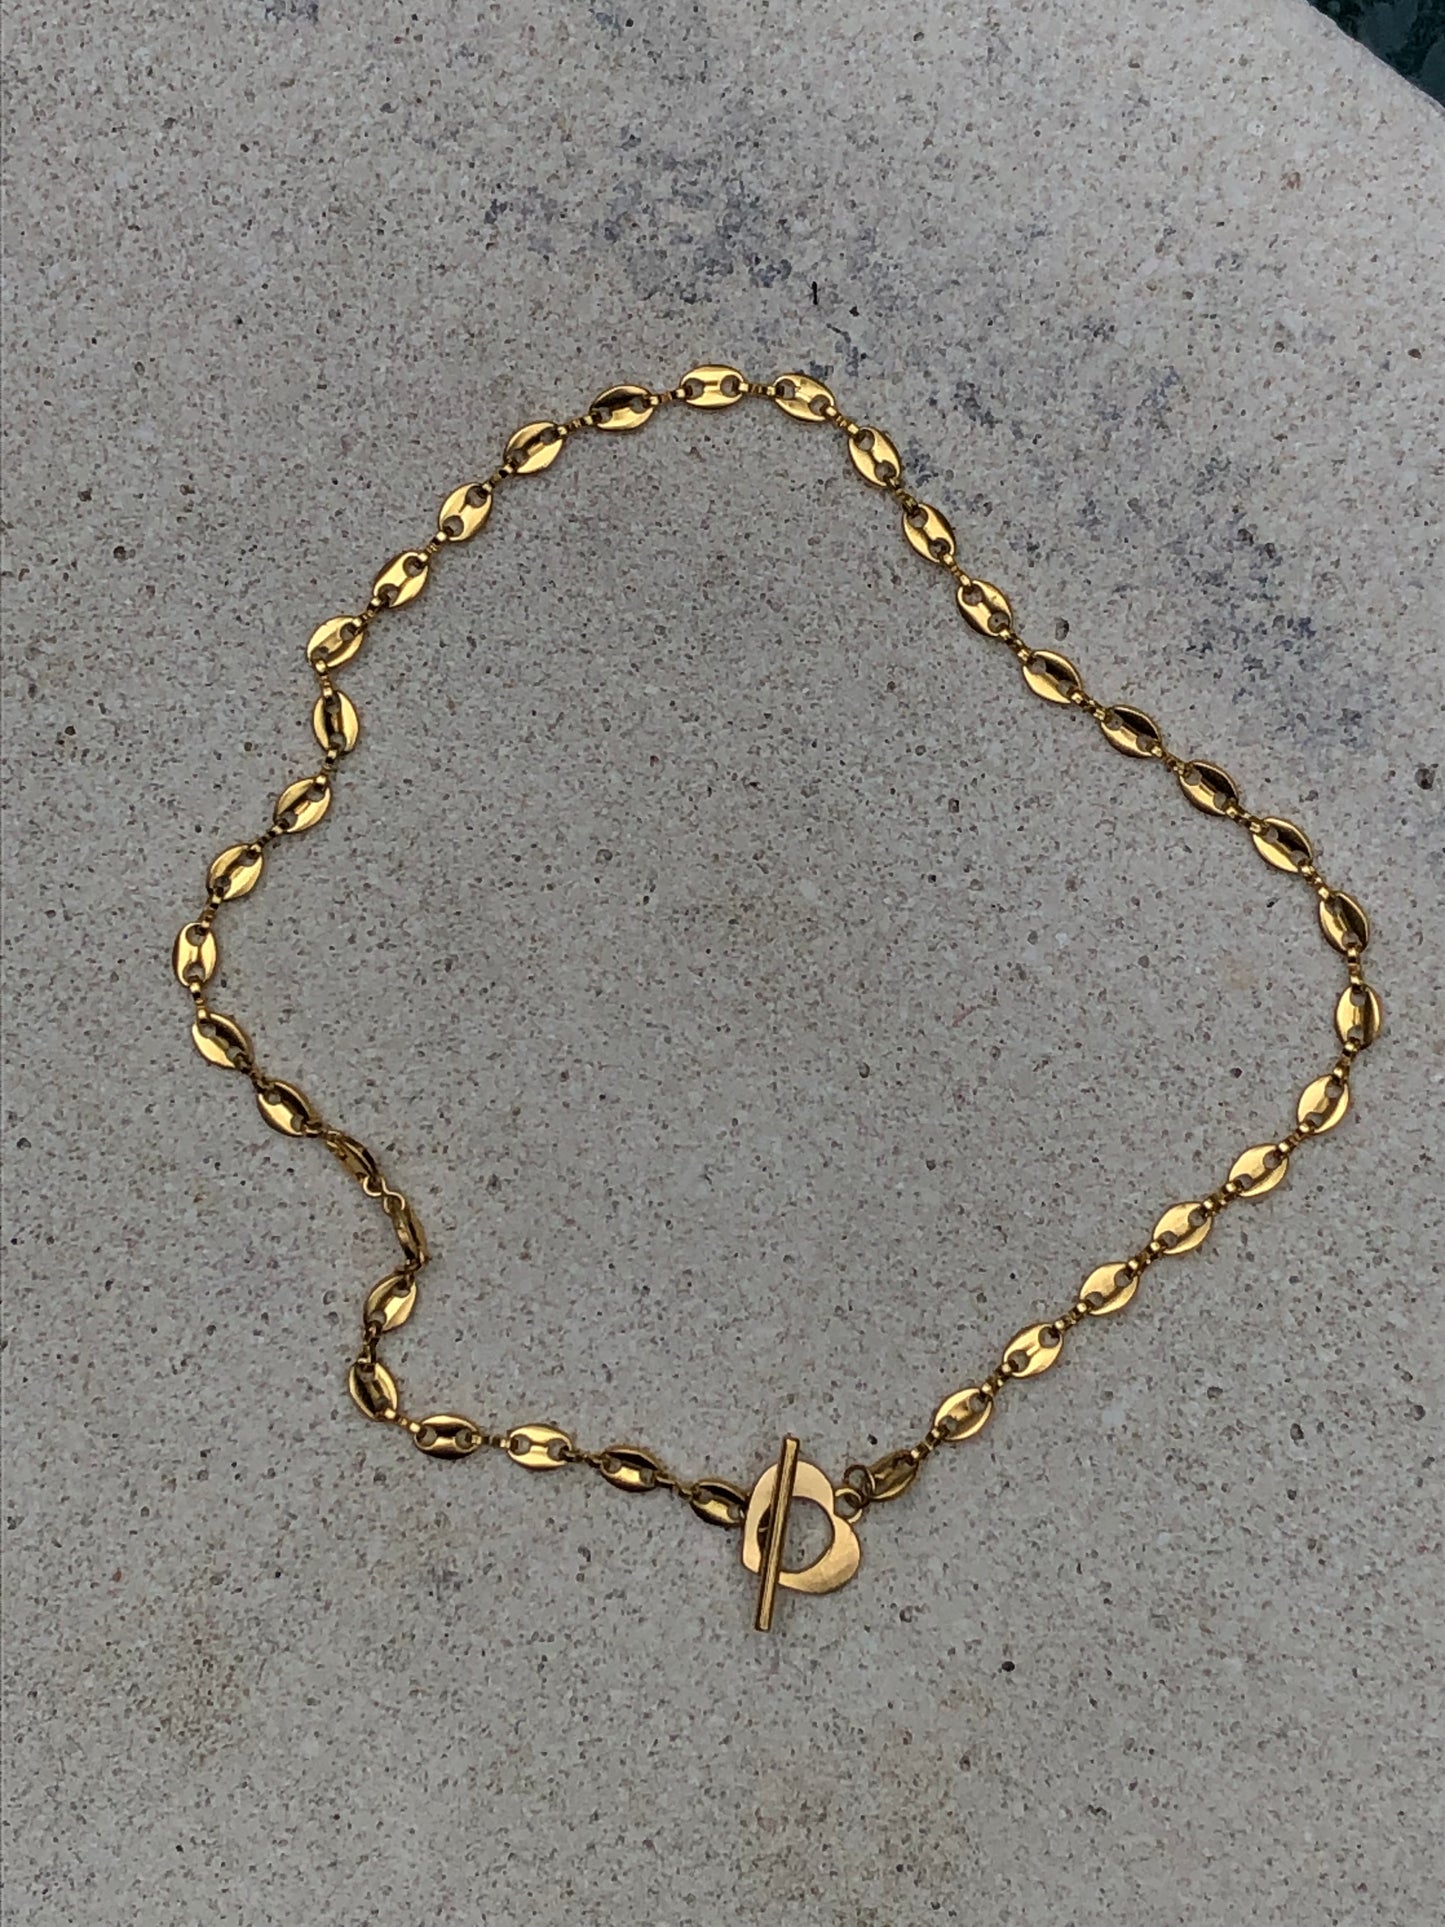 LoveLock Necklace